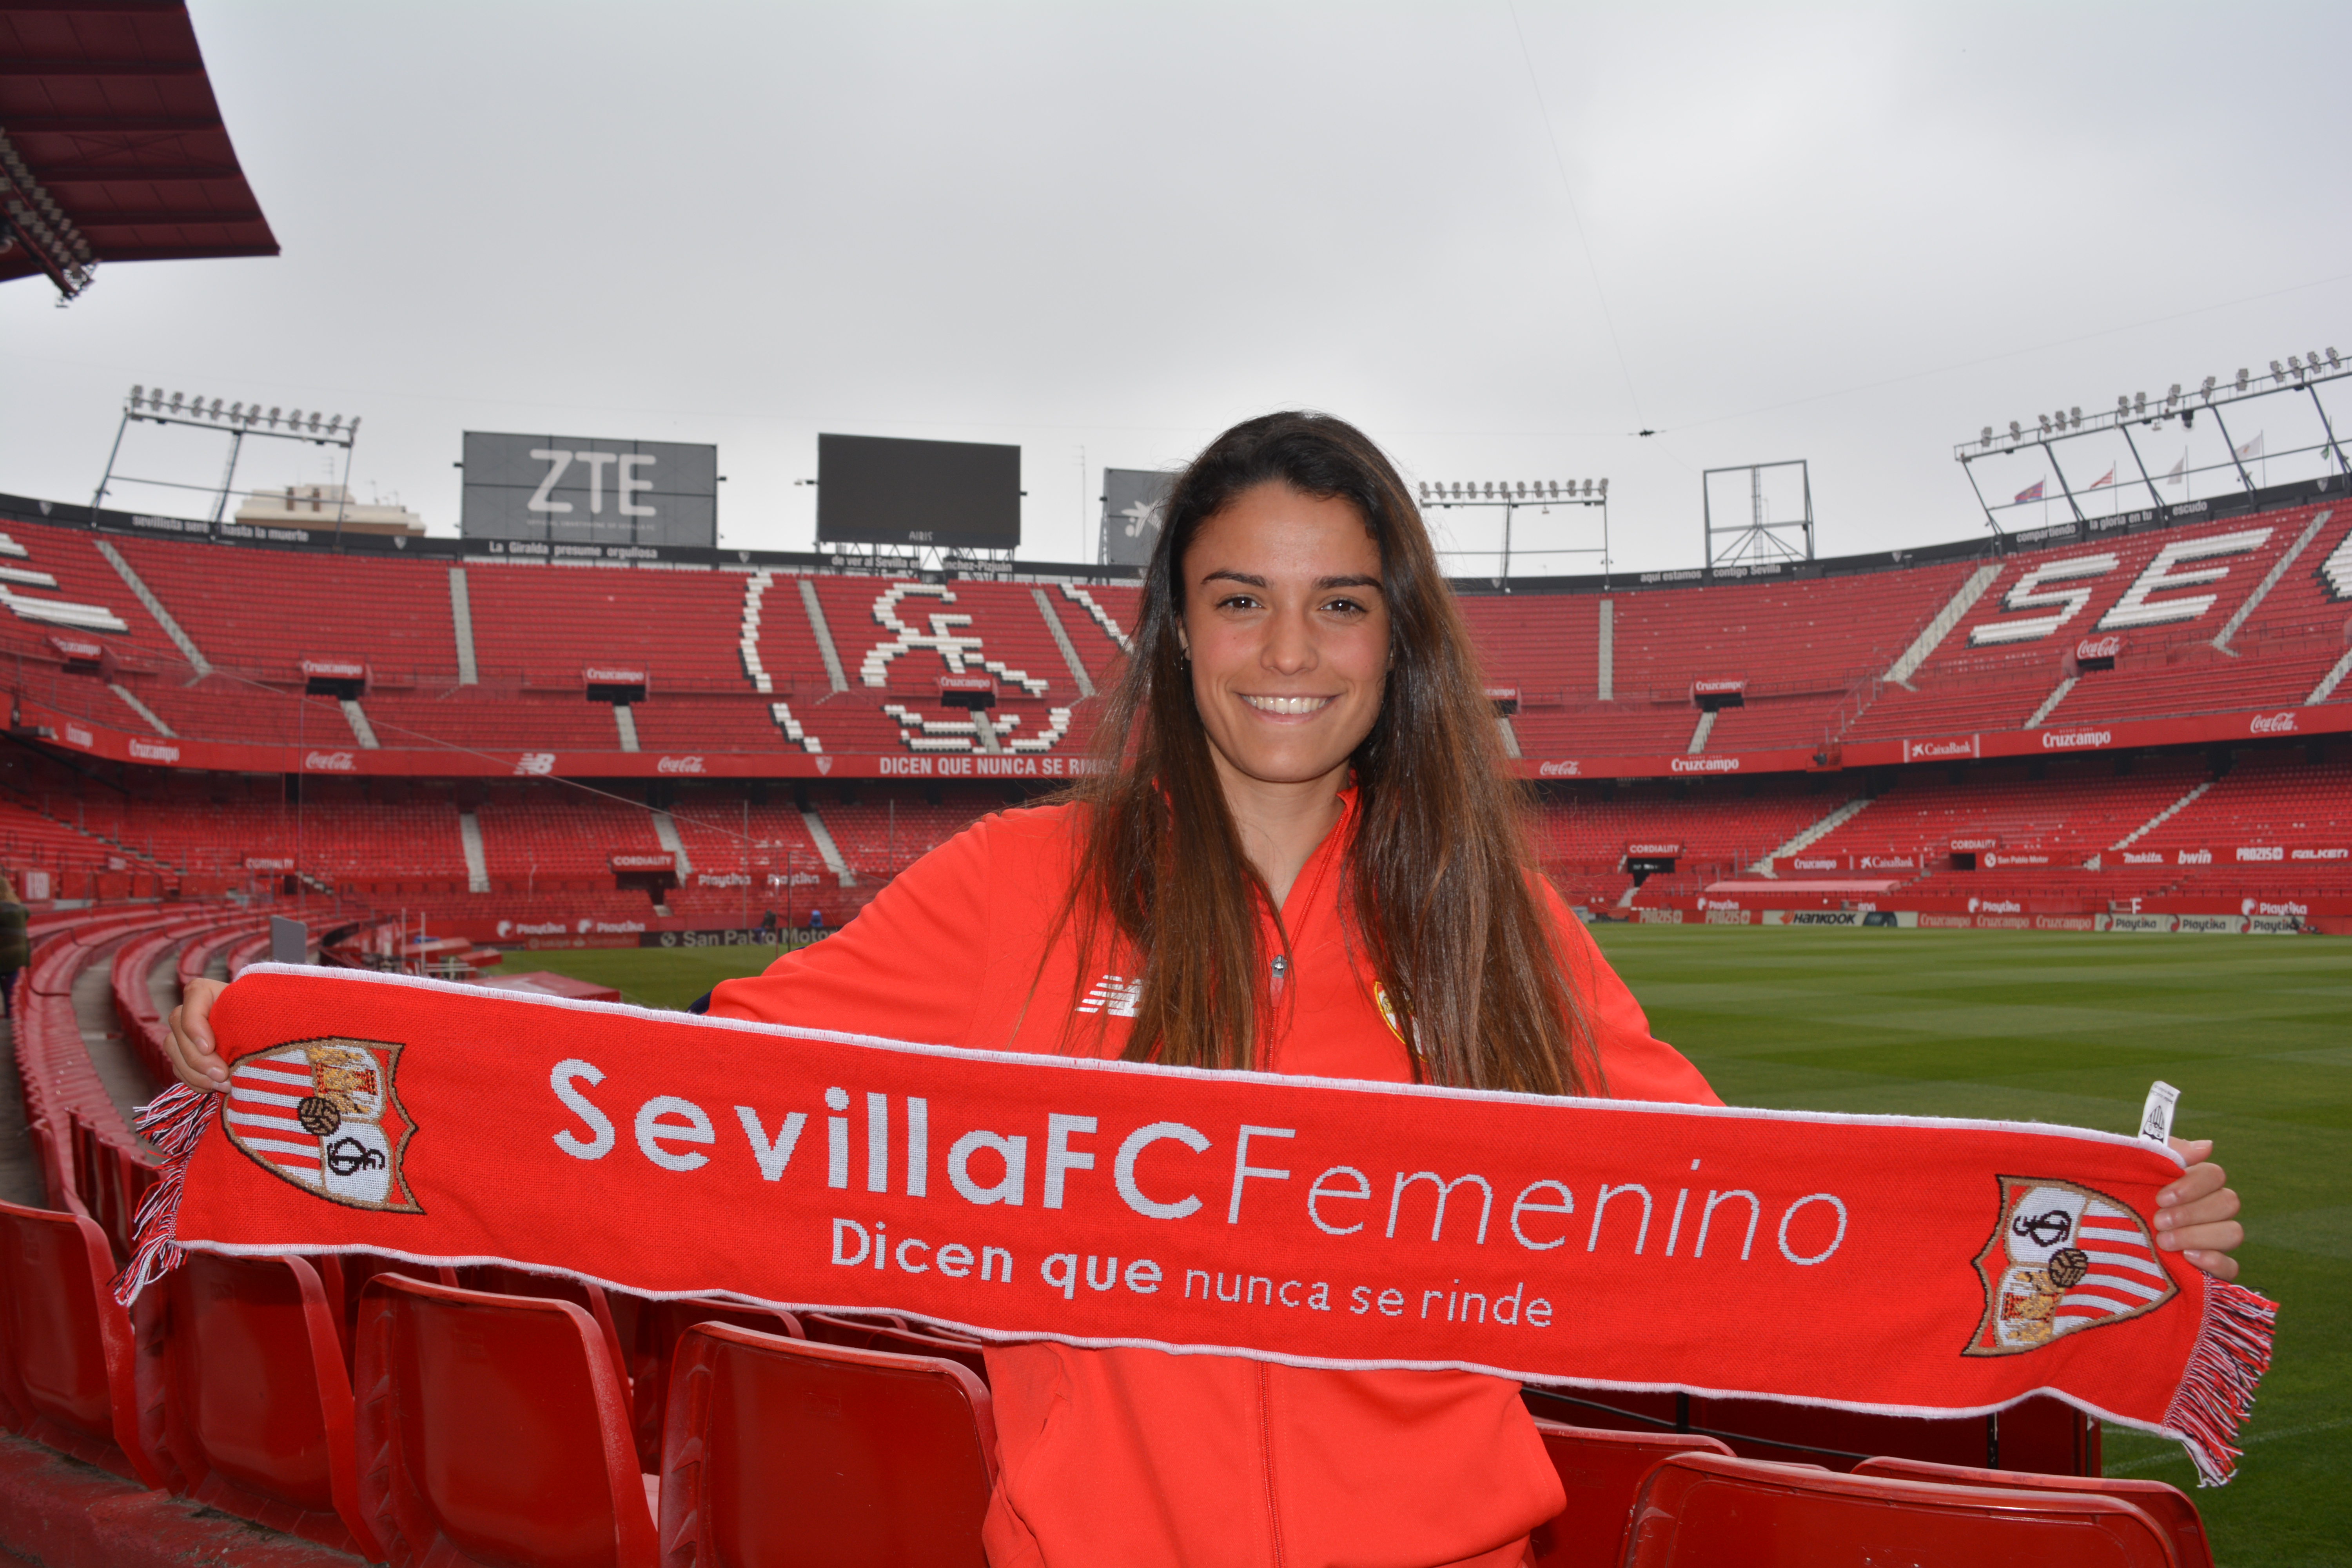 Marta Carrasco jugadora Sevilla FC Femenino